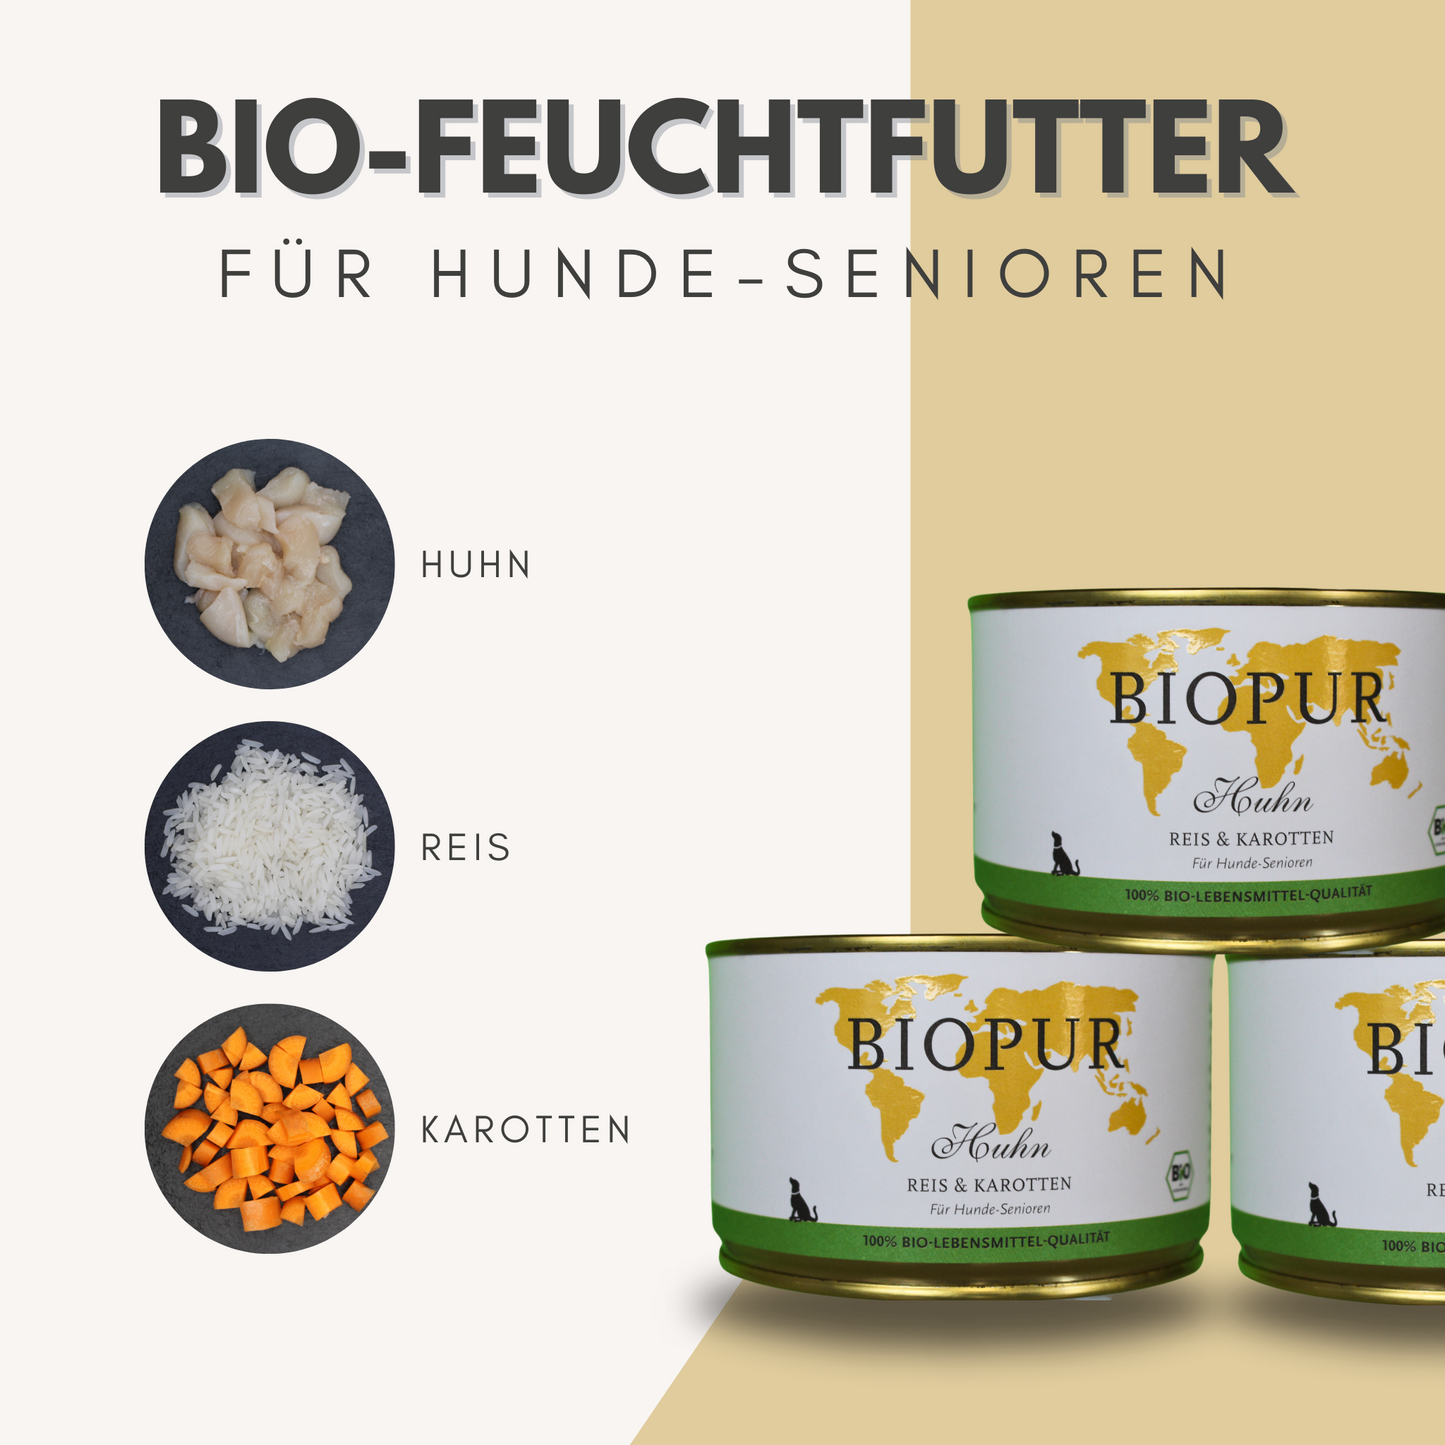 BIOPUR Bio-Feuchtfutter - Huhn, Reis & Karotten für Hunde-Senioren